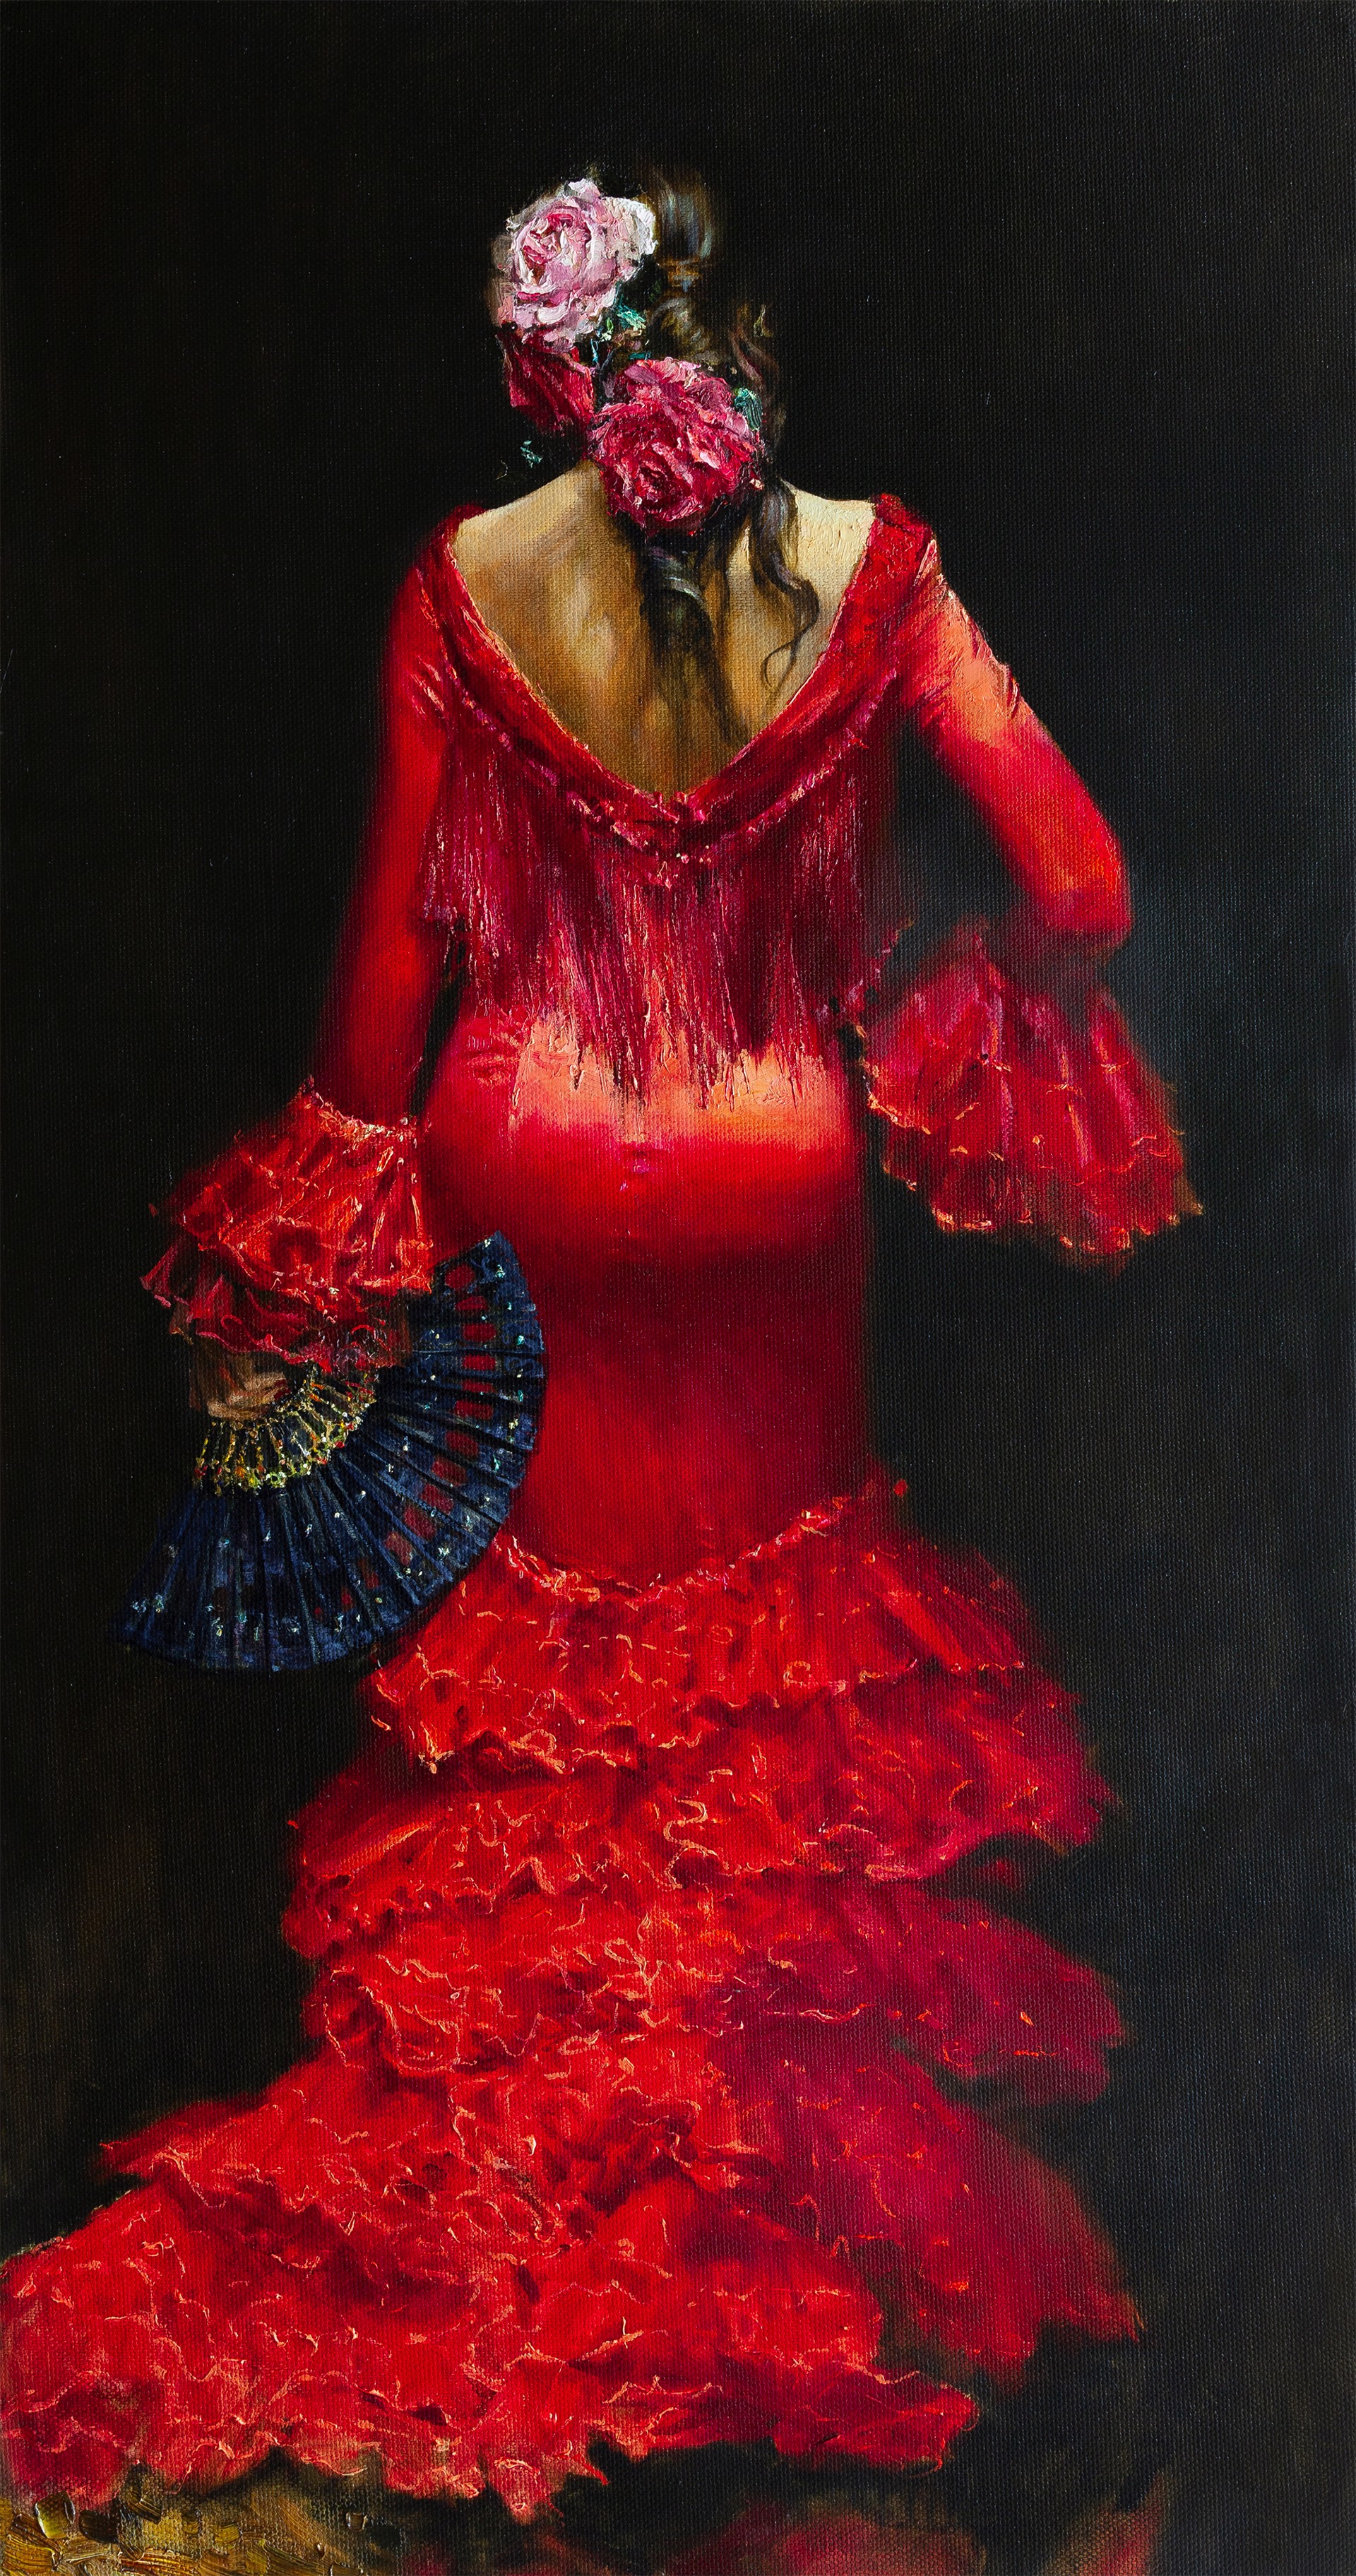 "Flamenco Magic" by Oleg Trofimov